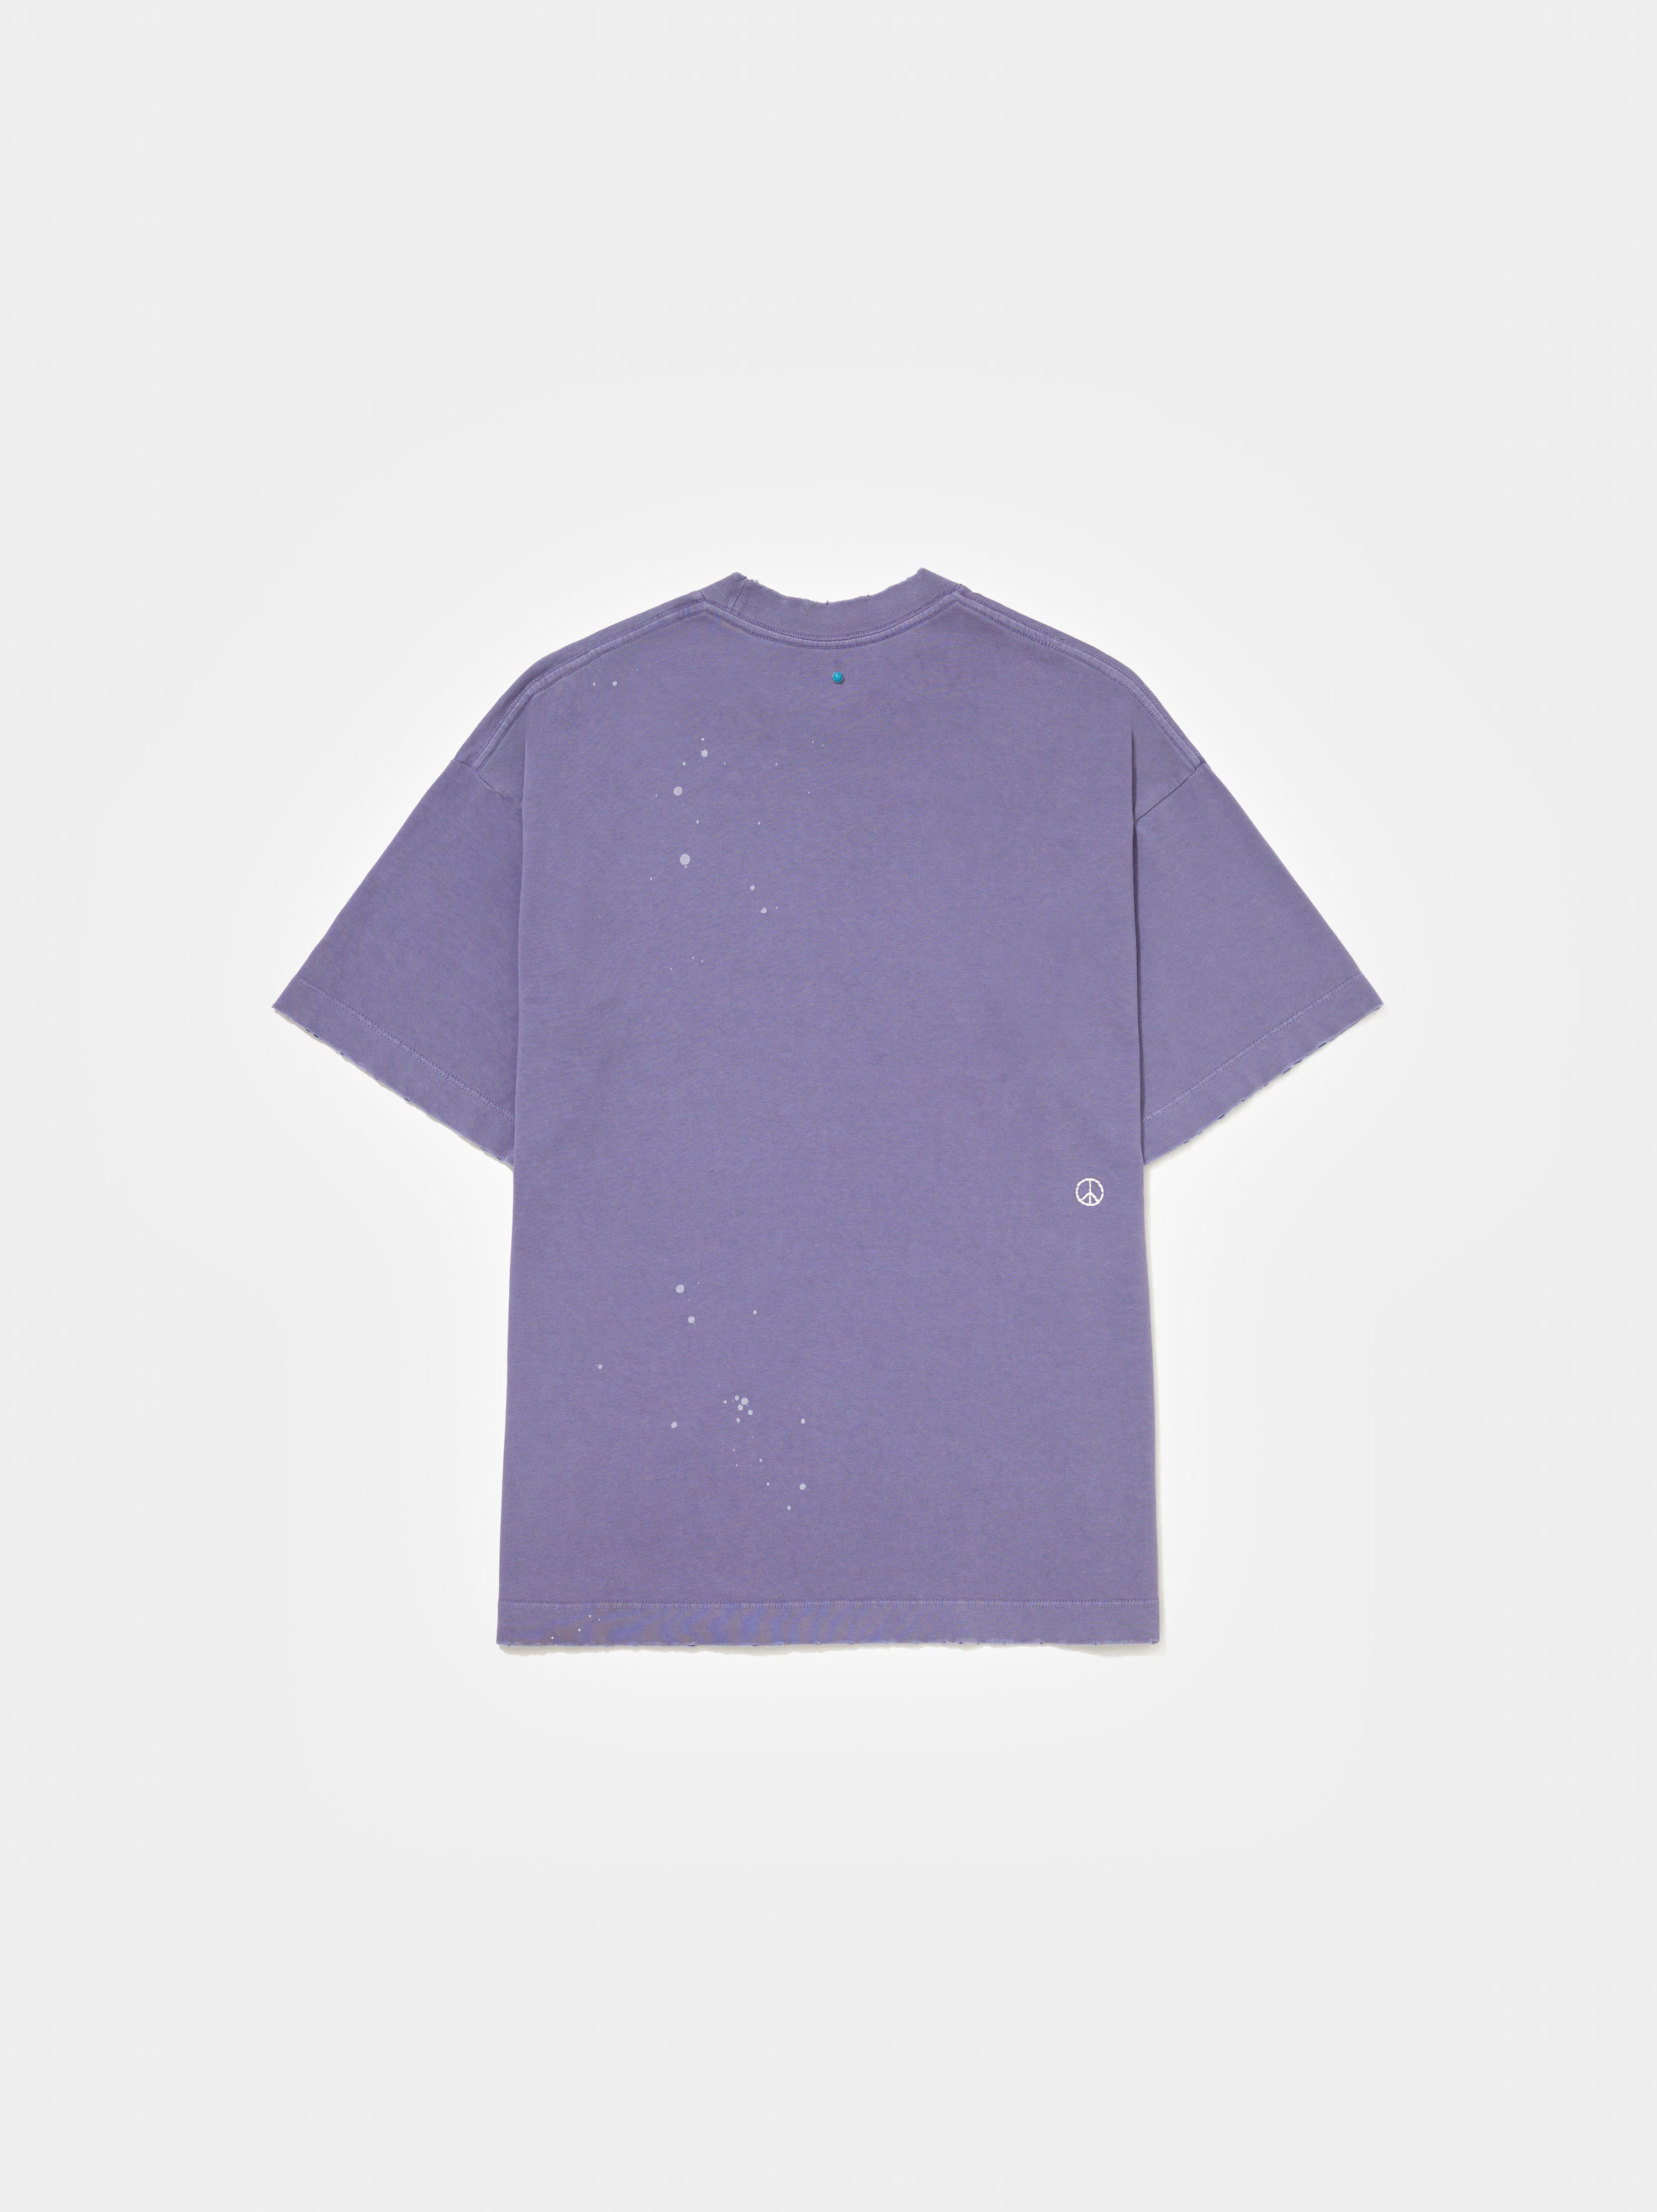 Splatter T-Shirt - Carbon